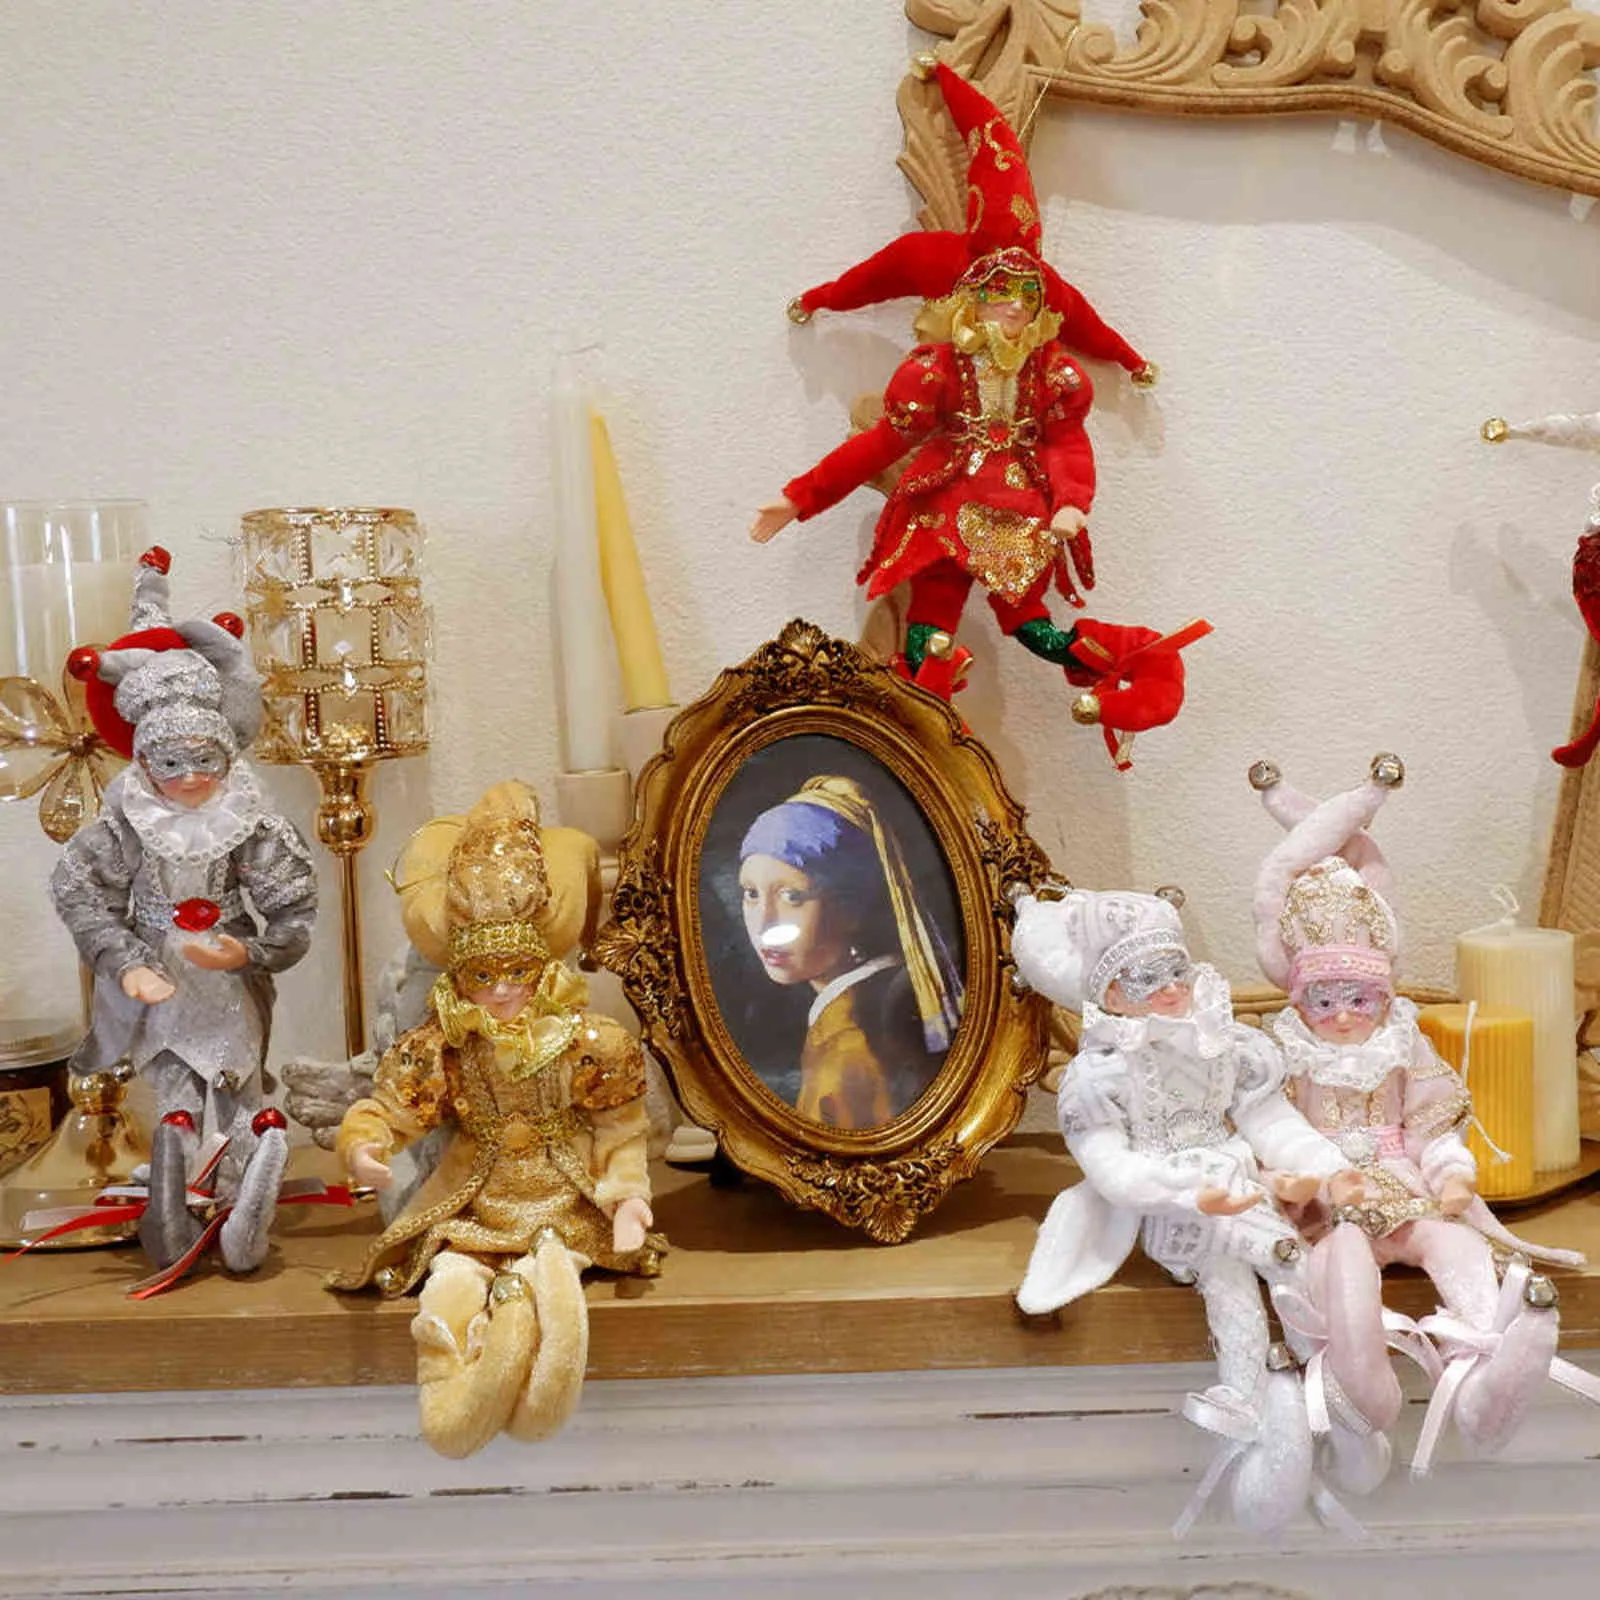 ABXMAS Weihnachtsdekoration, handgefertigt, hängende sitzende Elfe, Plüschtier, Weihnachtsbaum, hängende Verzierung, Weihnachtsgeschenke, Jahresdekoration 211122